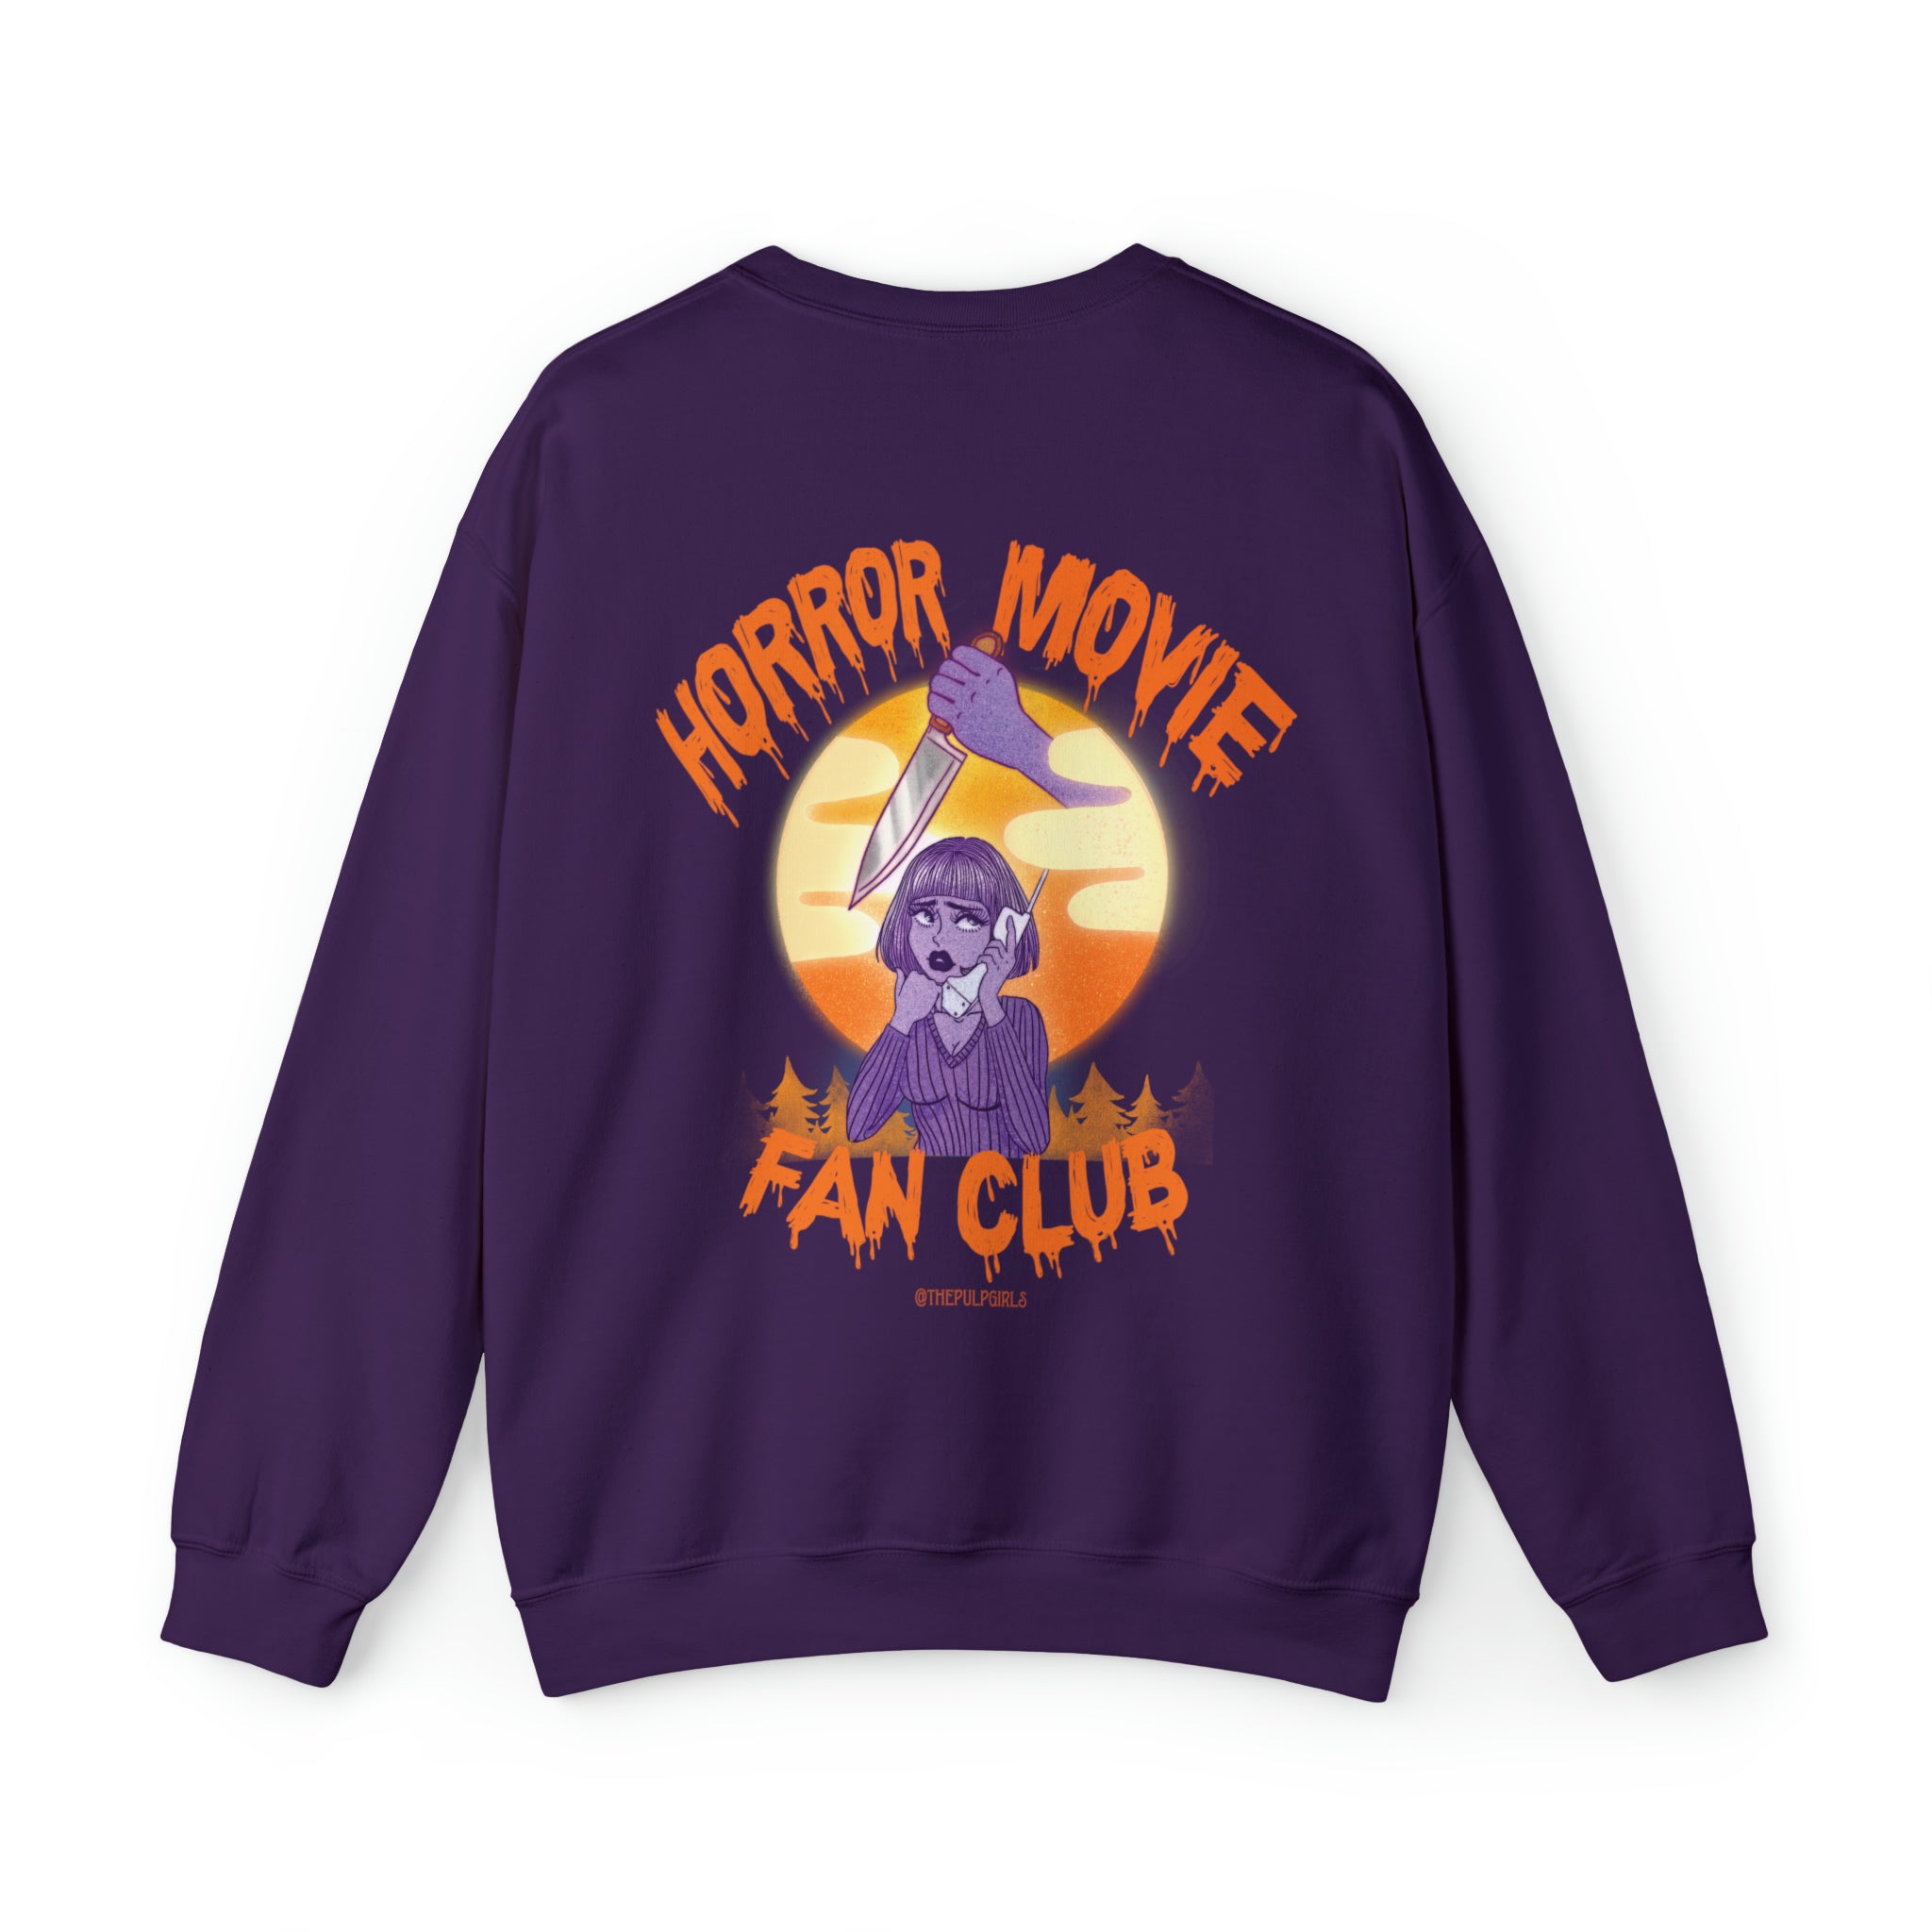 Horror Movie Fan Club Crewneck